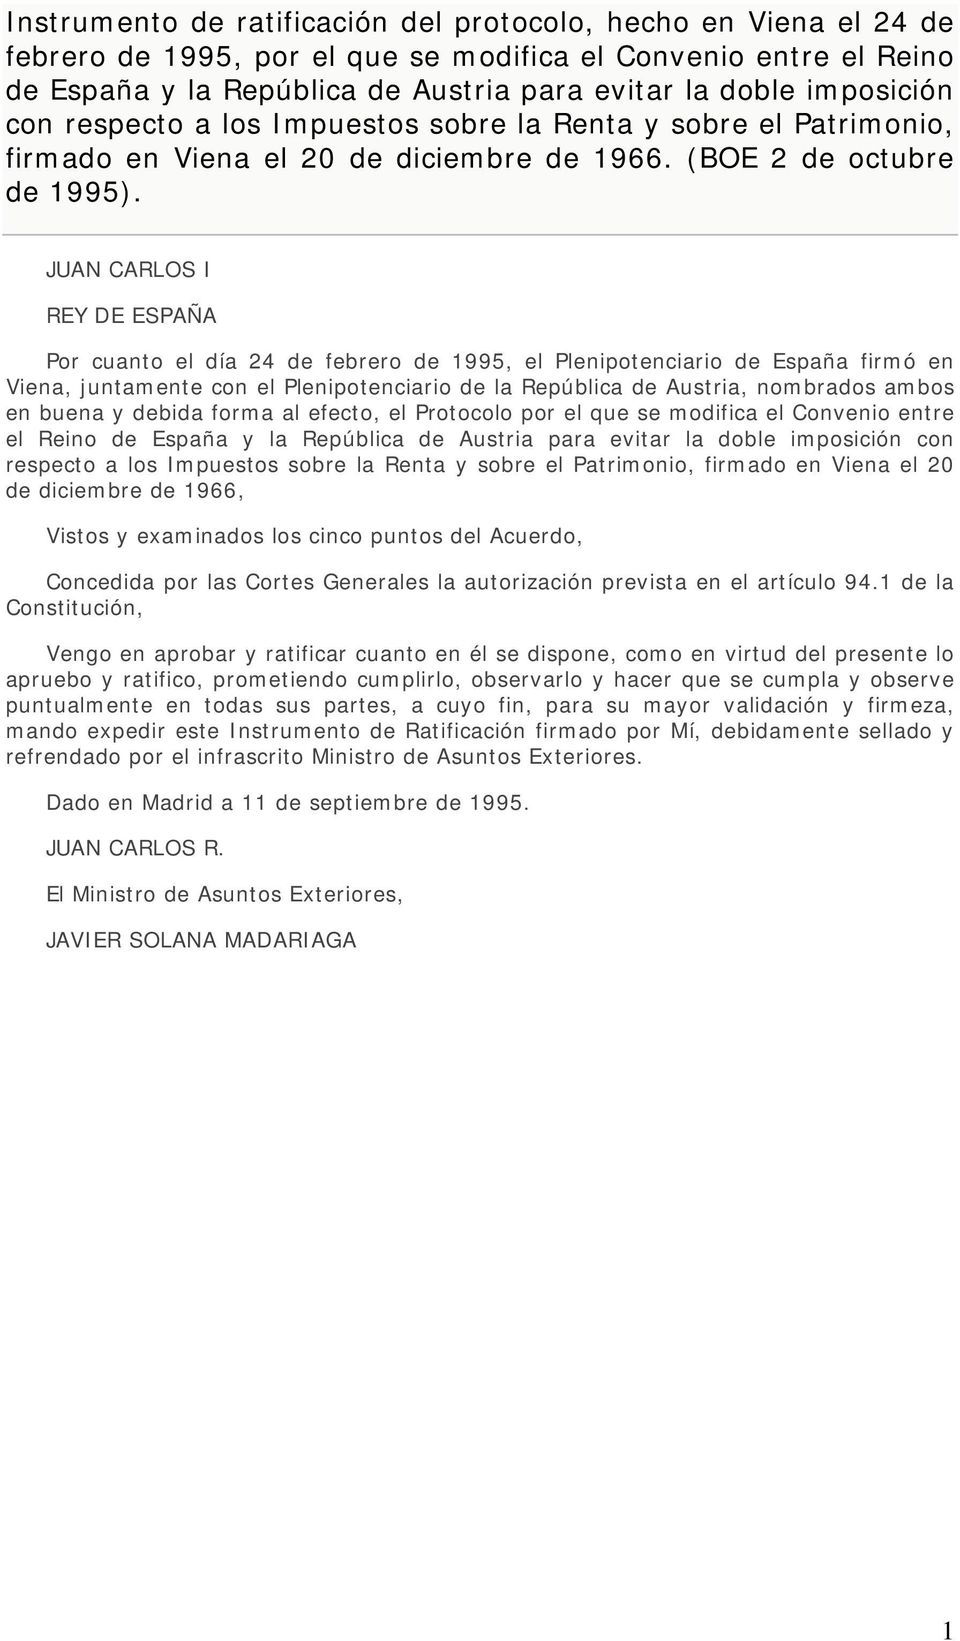 JUAN CARLOS I REY DE ESPAÑA Por cuanto el día 24 de febrero de 1995, el Plenipotenciario de España firmó en Viena, juntamente con el Plenipotenciario de la República de Austria, nombrados ambos en